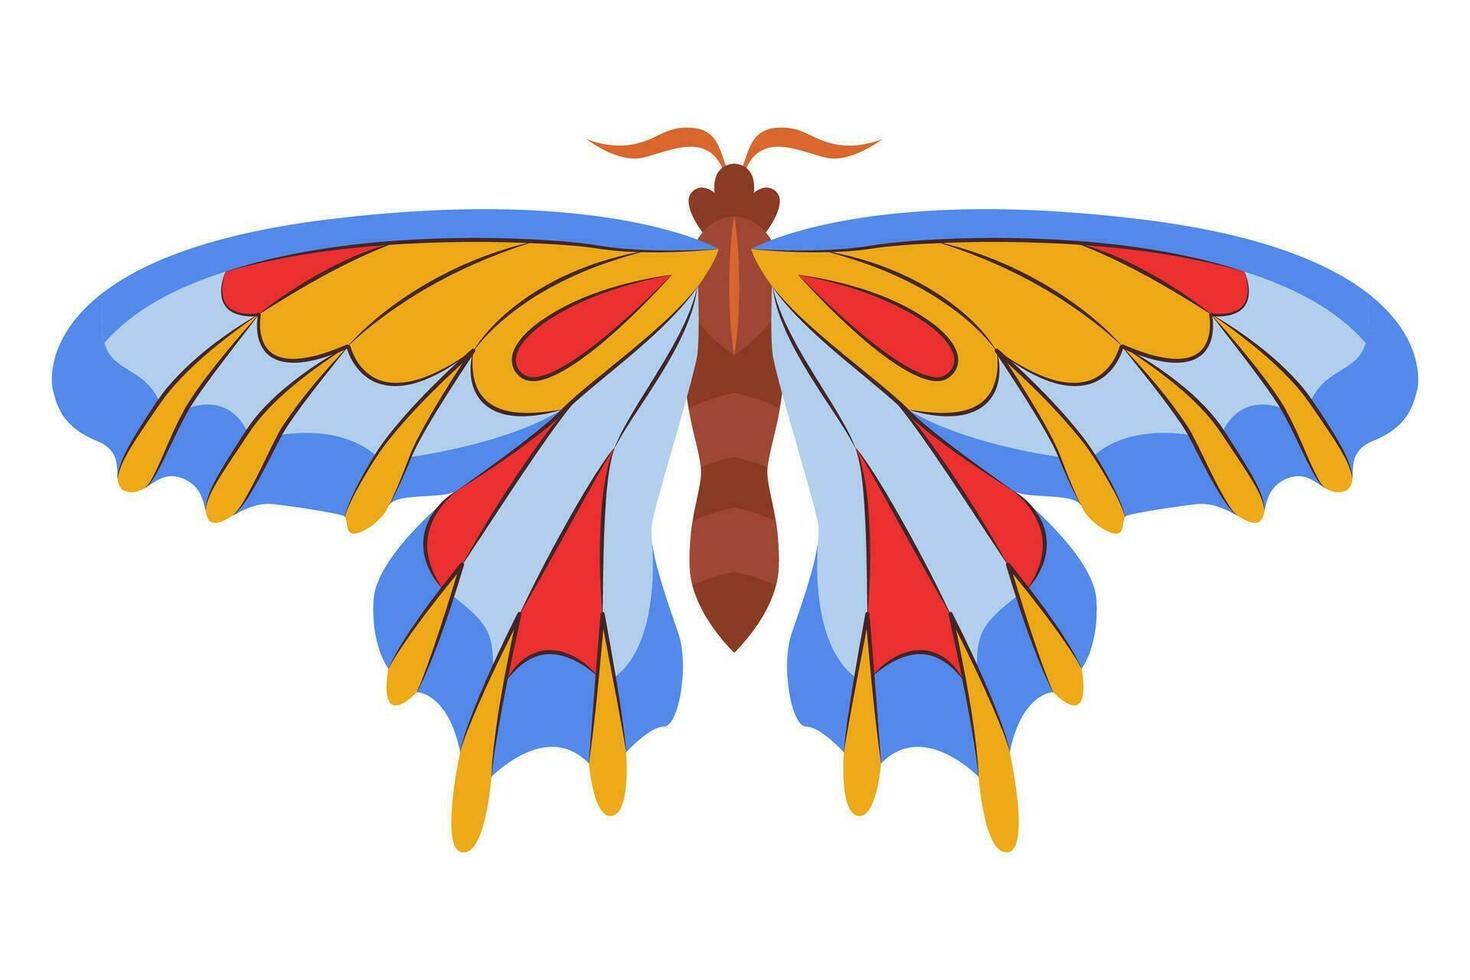 colorato farfalla icona logo isolato. bellissimo farfalla illustrazione vettore